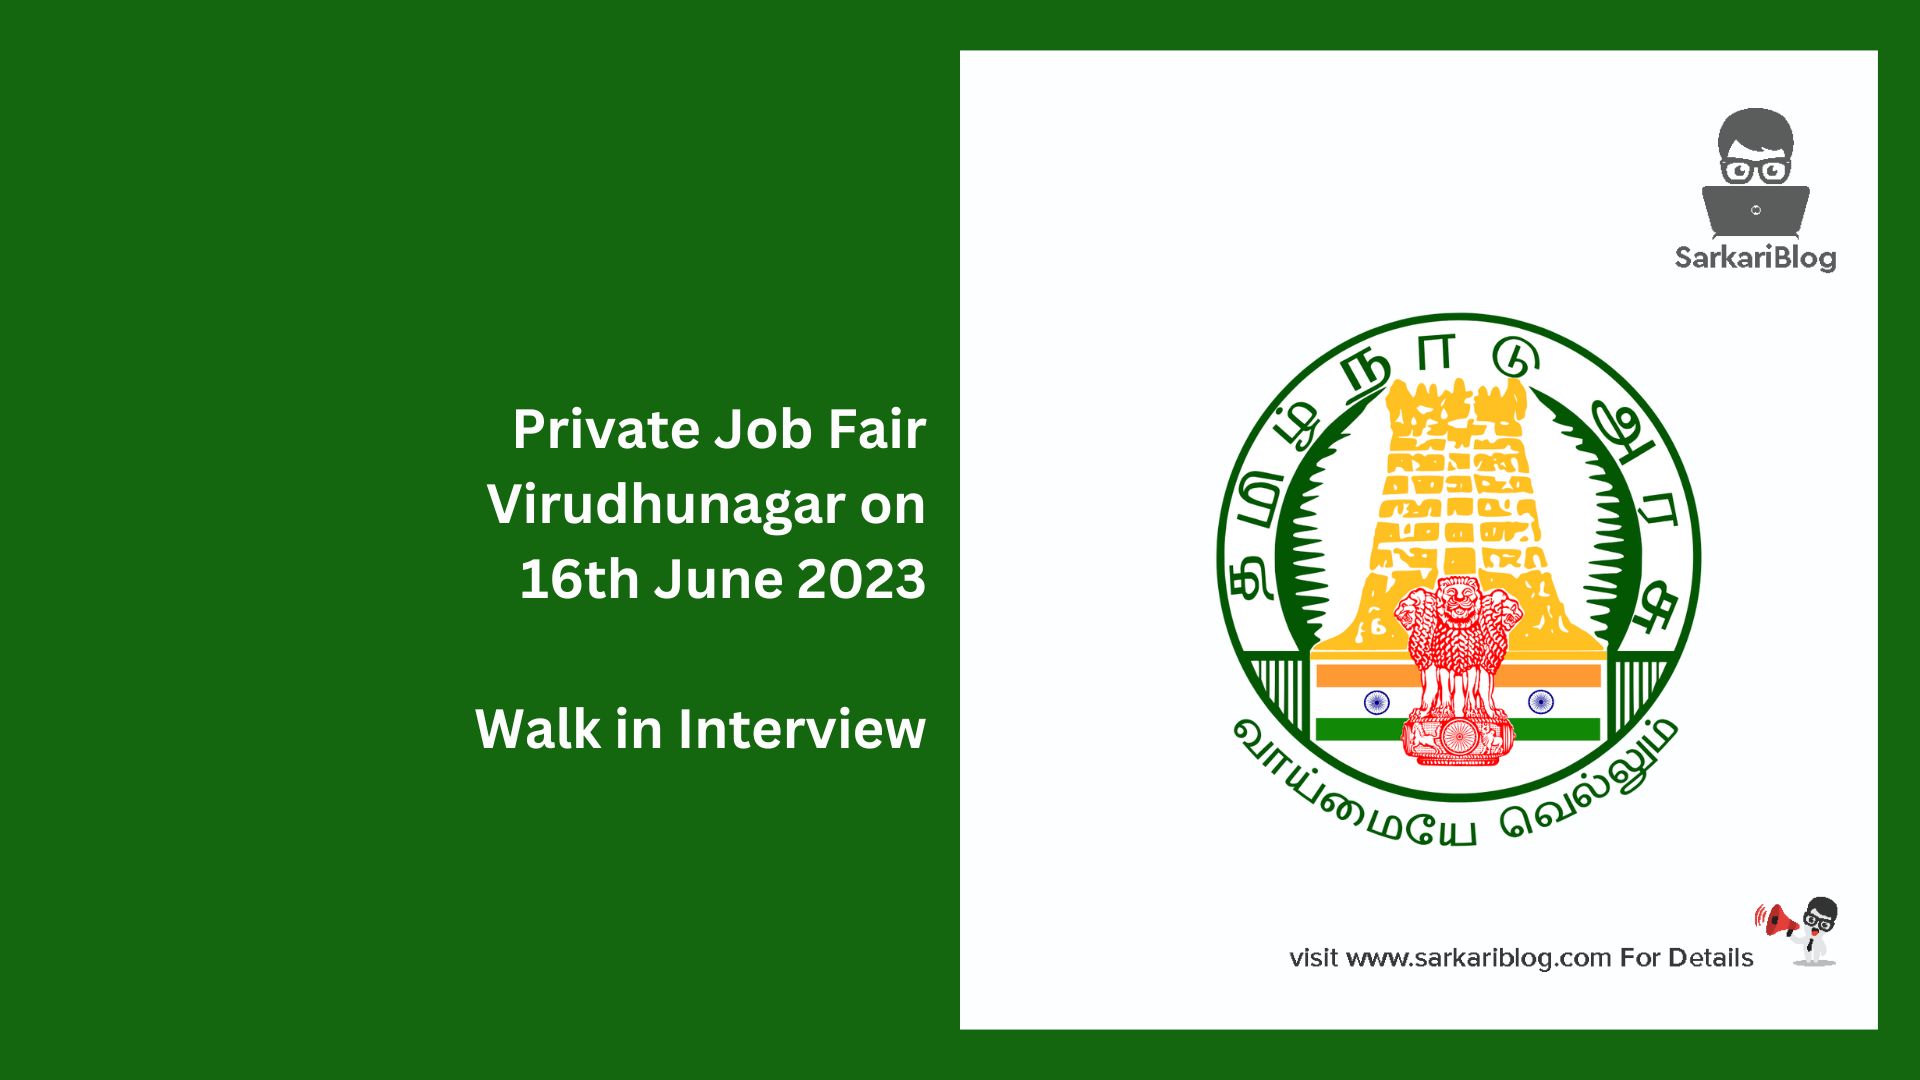 Private Job Fair Virudhunagar on 16th June 2023